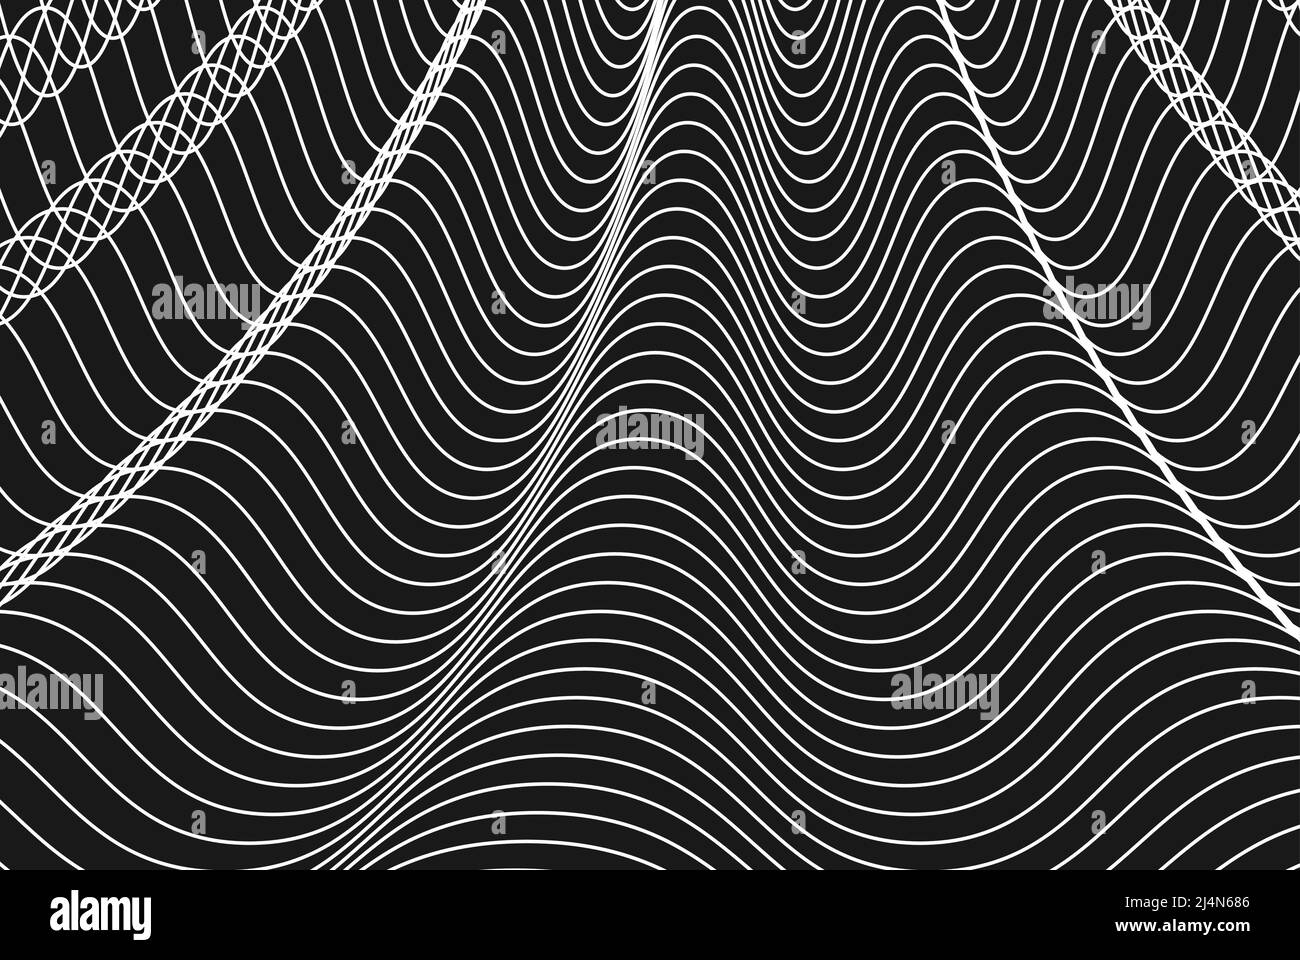 Weiße Wellenlinien auf schwarzem Grund, minimaler abstrakter Hintergrund, Hintergrund mit geometrischem Linienmuster Stock Vektor